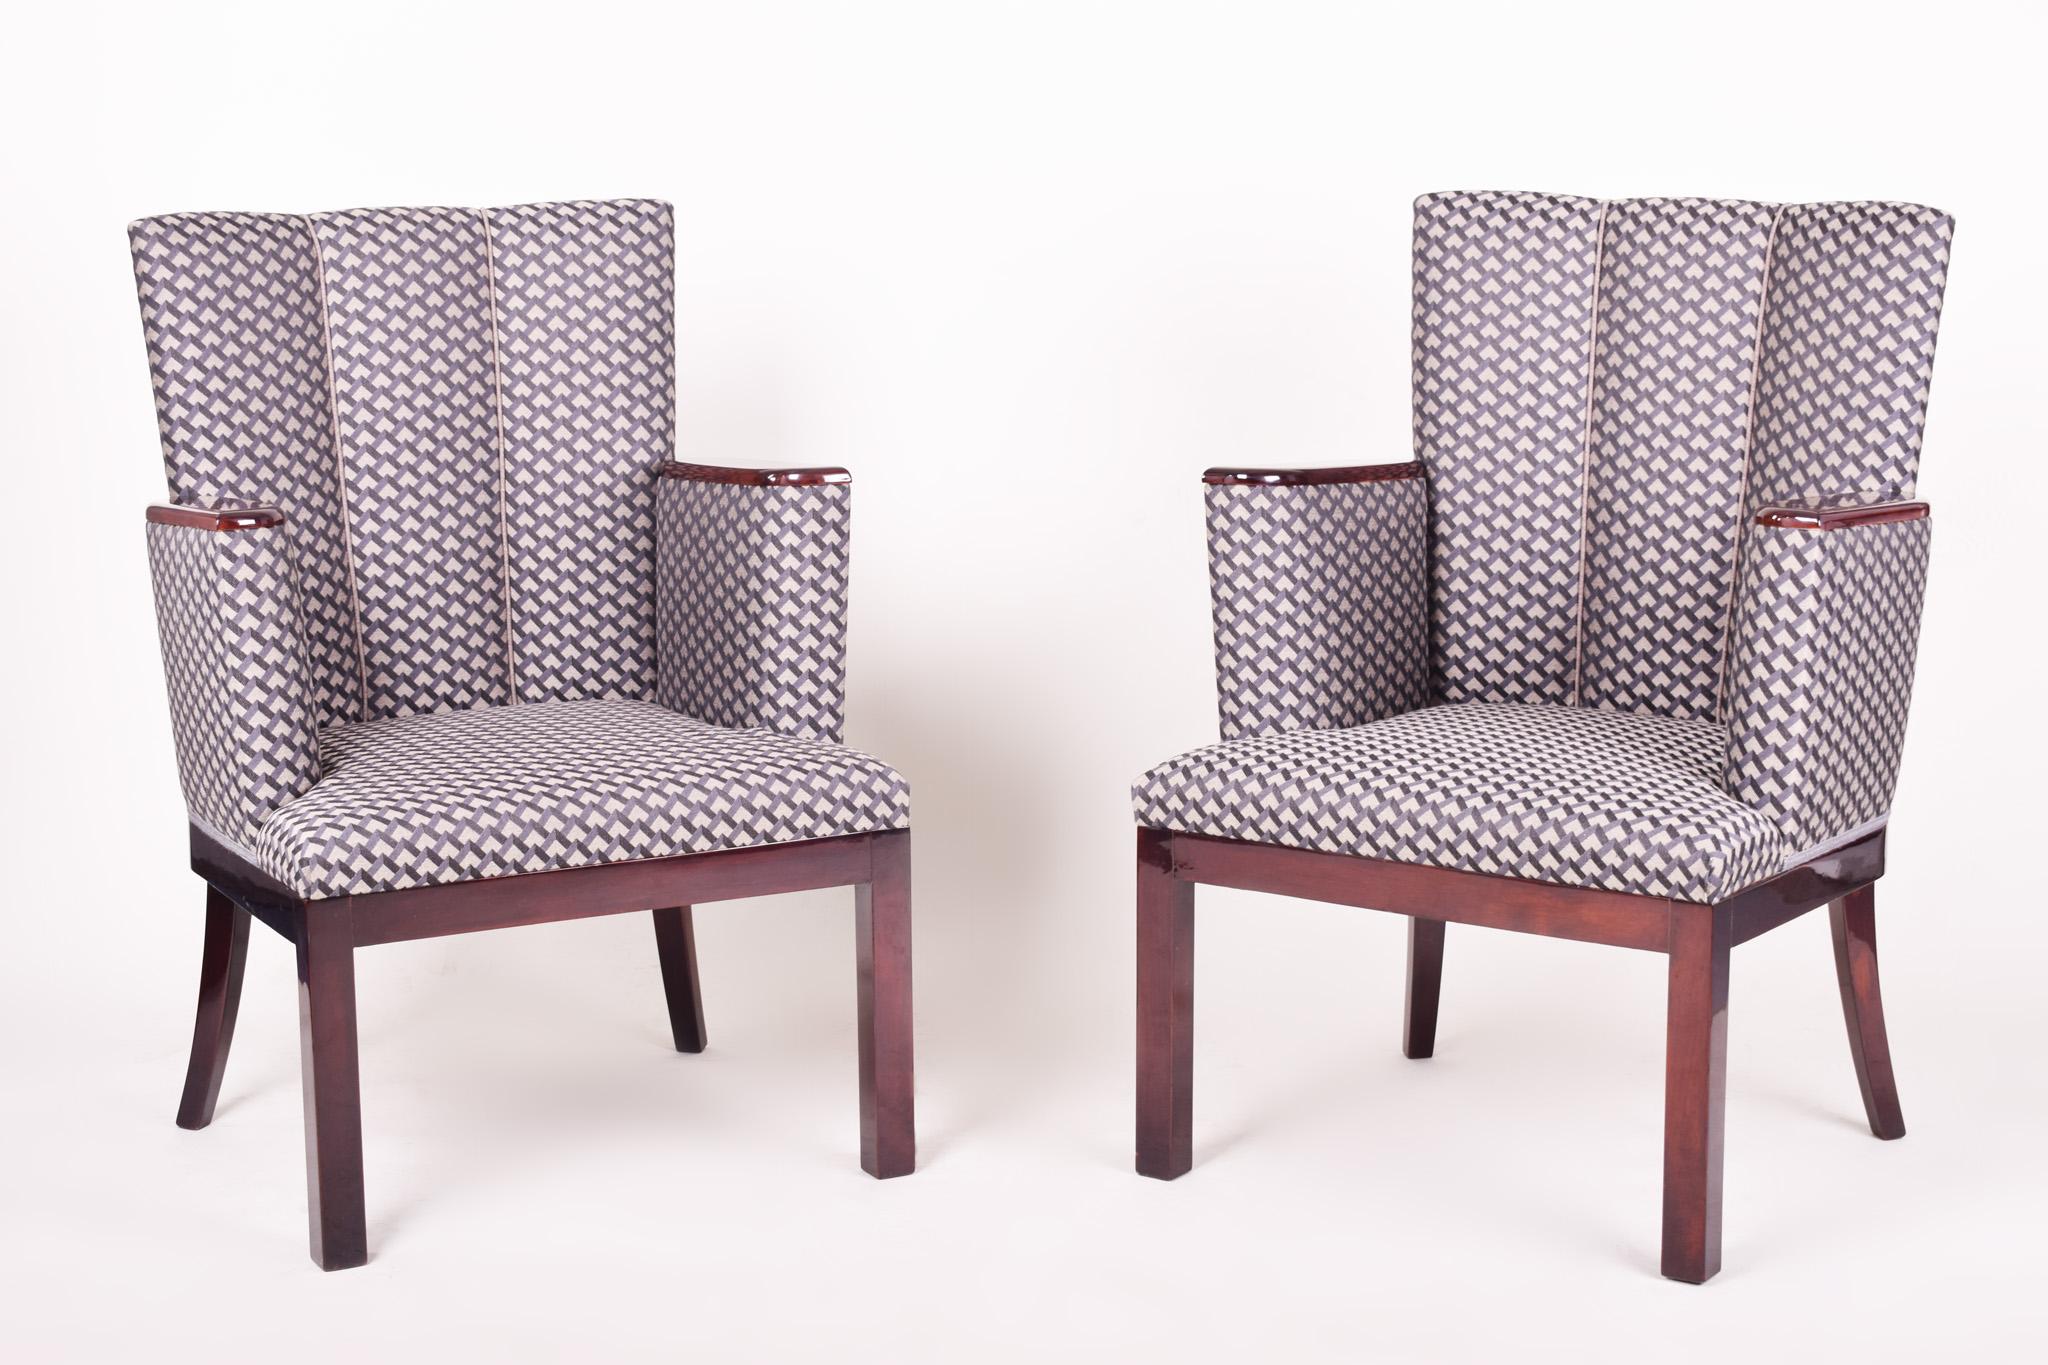 Paar Art-Deco-Sessel.
Vollständig restauriert, Oberfläche durch Klavierlacke auf Hochglanz gebracht. Neue Polsterung und neuer Stoff.

Wir garantieren einen sicheren und günstigen Lufttransport von Europa in die ganze Welt innerhalb von 7